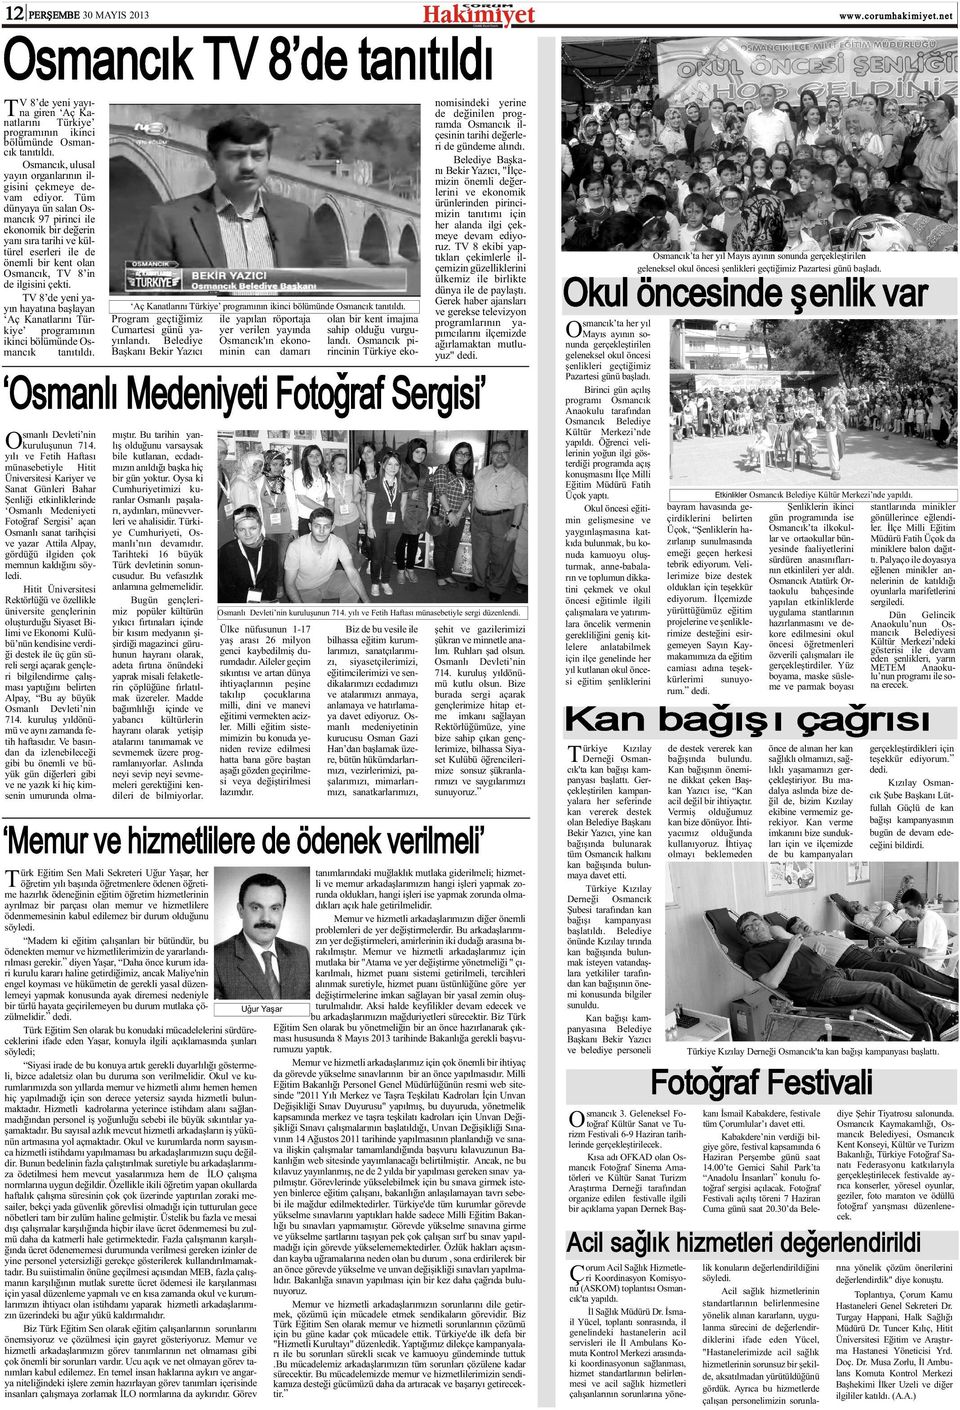 Tüm dünyaya ün salan Osmancýk 97 pirinci ile ekonomik bir deðerin yaný sýra tarihi ve kültürel eserleri ile de önemli bir kent olan Osmancýk, TV 8 in de ilgisini çekti.